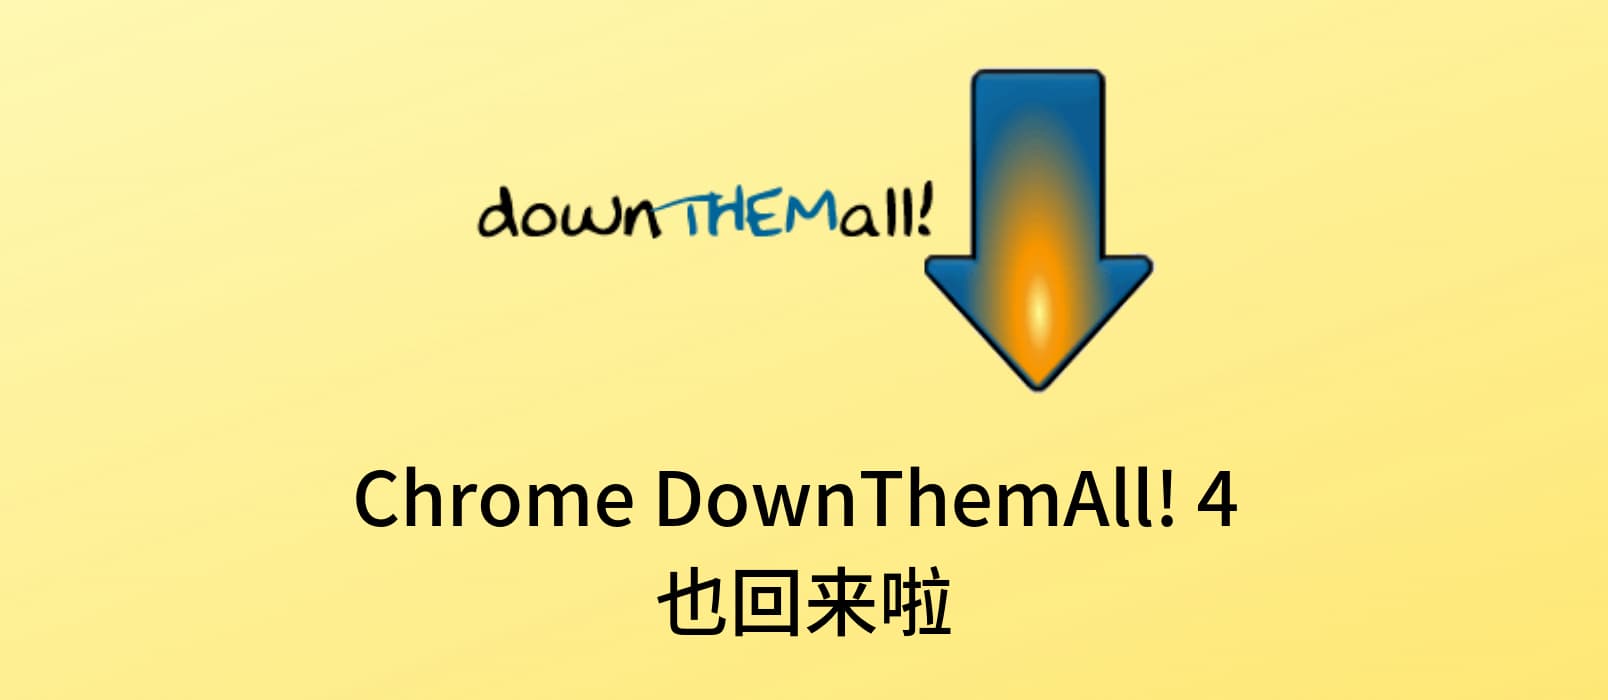 著名浏览器下载增强插件 DownThemAll! 4 发布 Chrome、Opera 版本 1